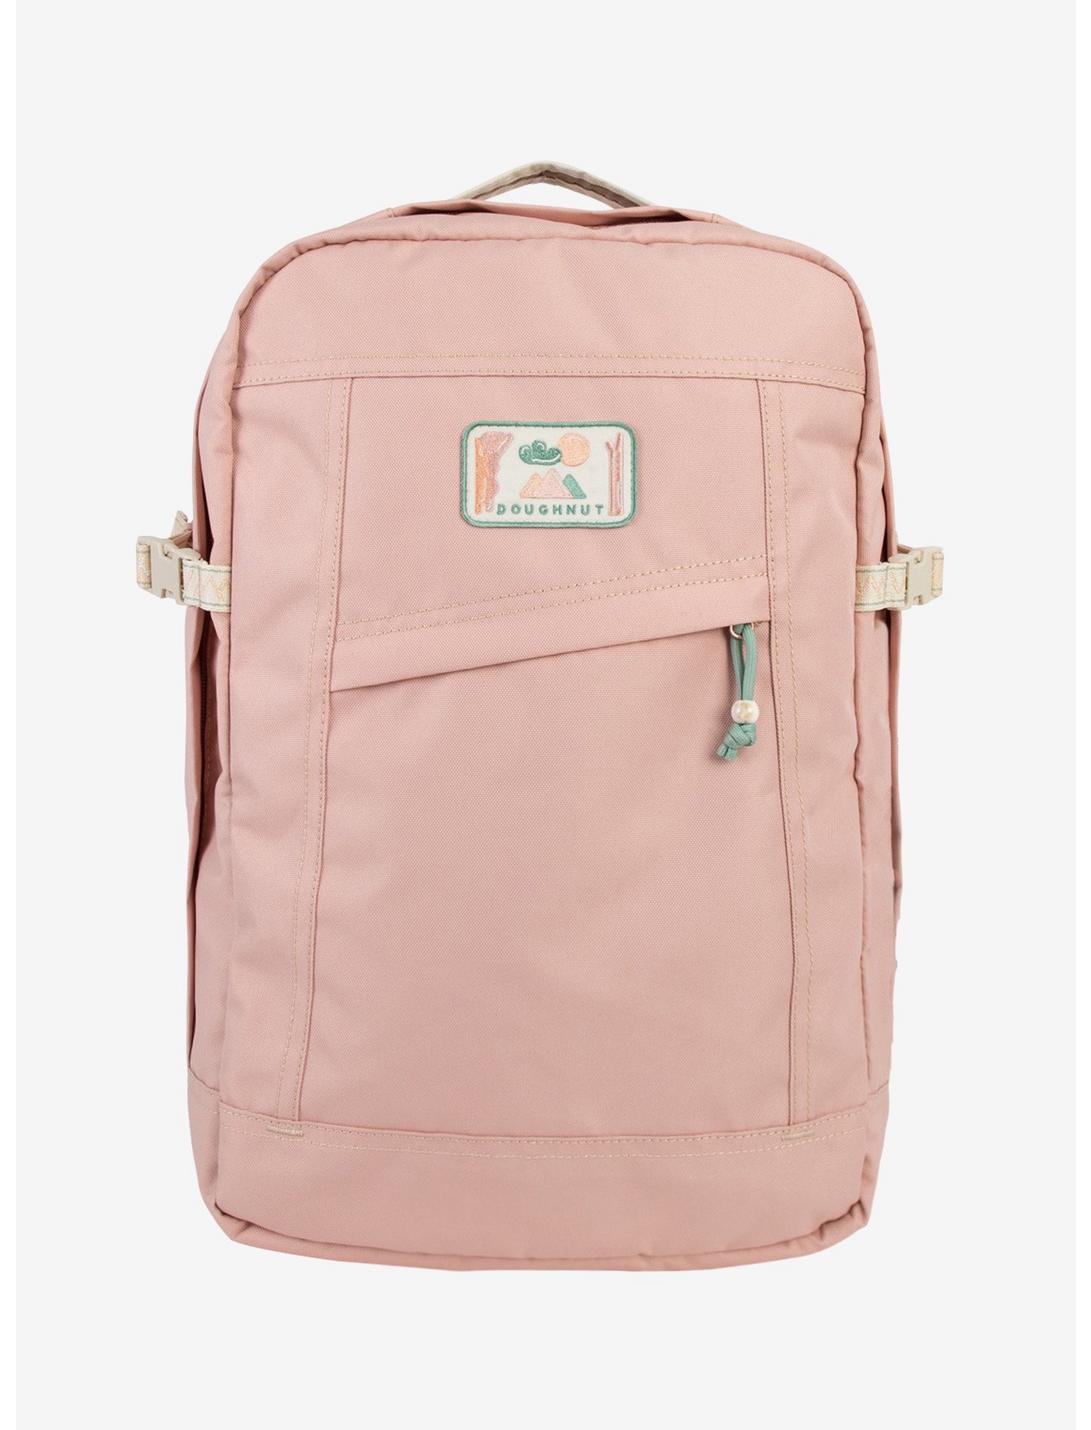 Doughnut Explorer Dreamwalker Series Pink Backpack, , hi-res